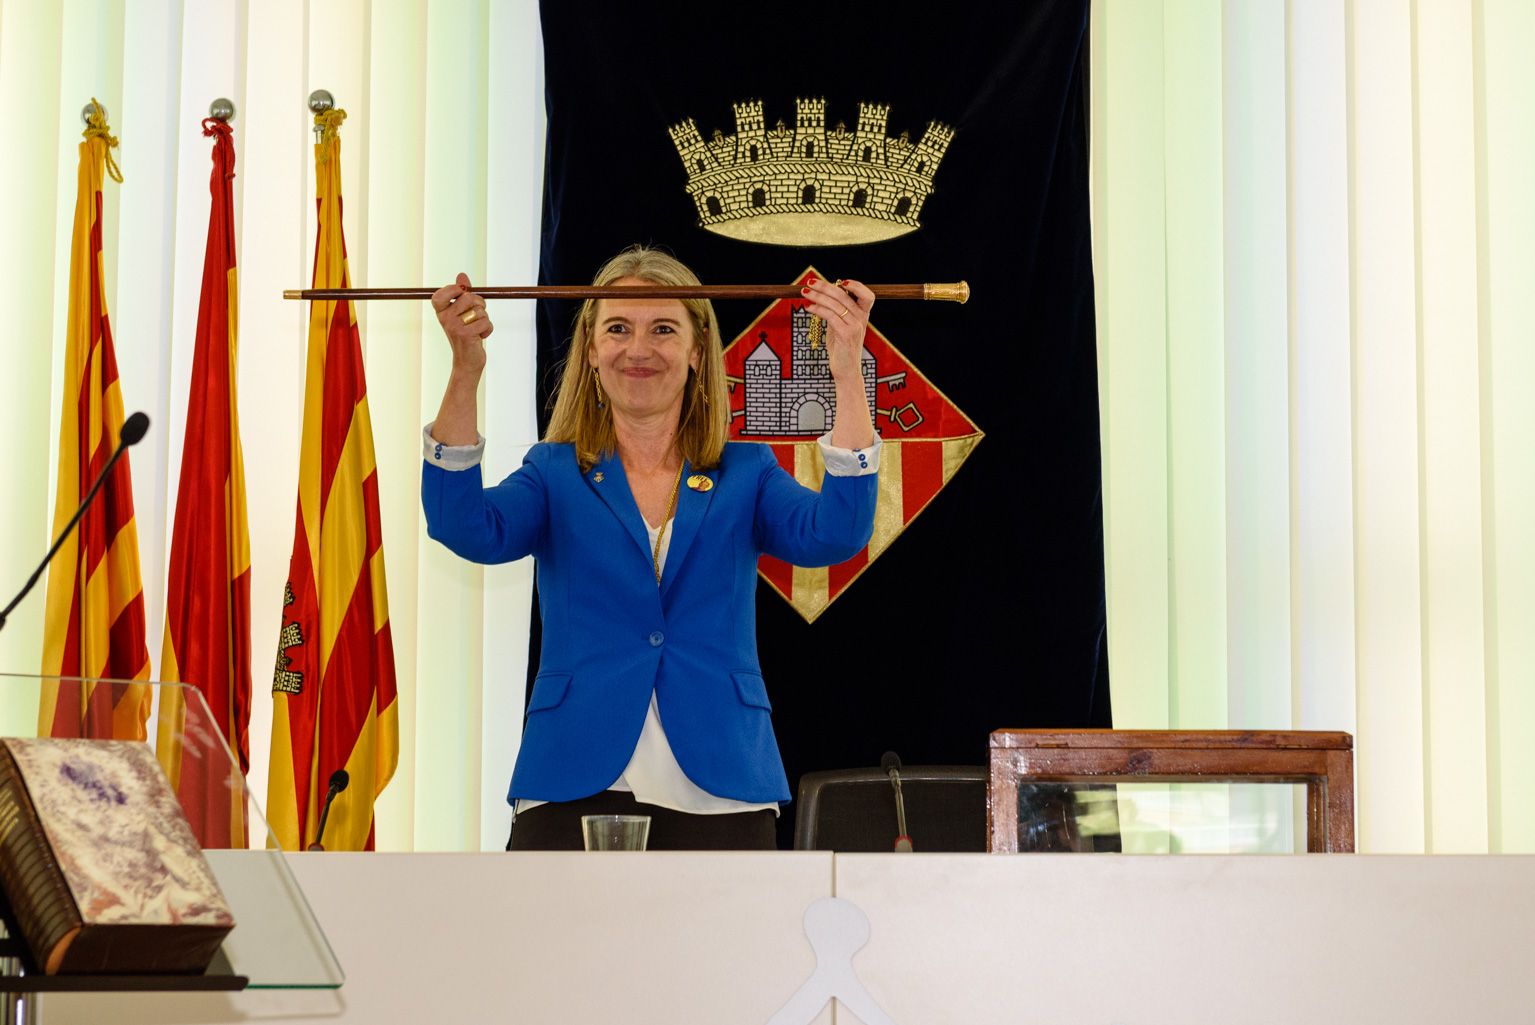 Mireia Ingla és alcaldessa de Sant Cugat del Vallès des del juny de 2019 FOTO: Miguel López Mallach